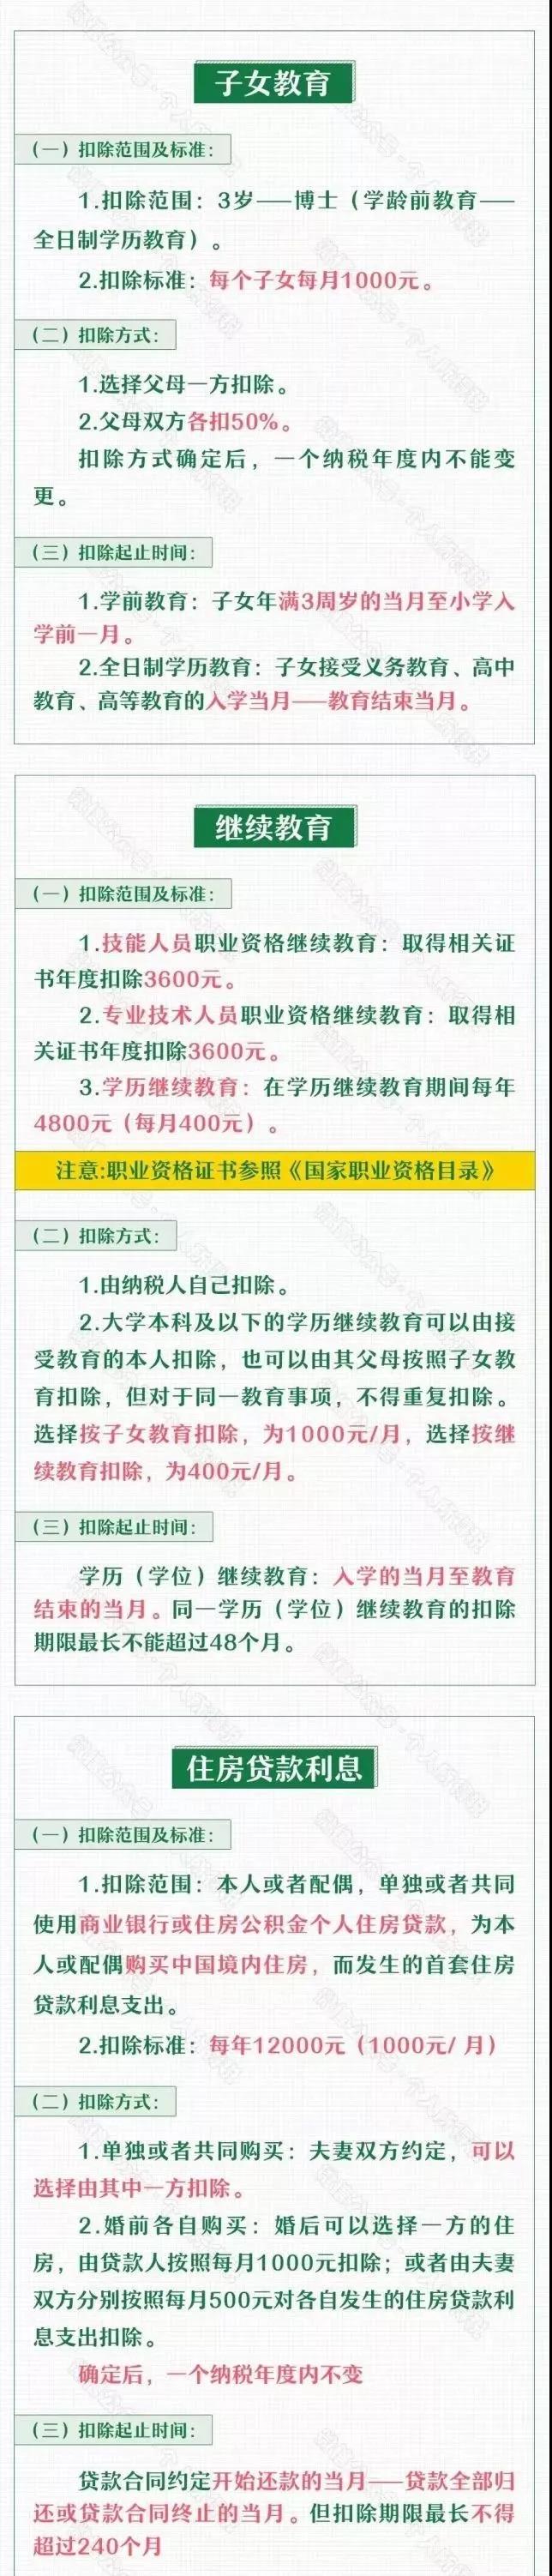 深圳个税专项附加扣除的条件和标准